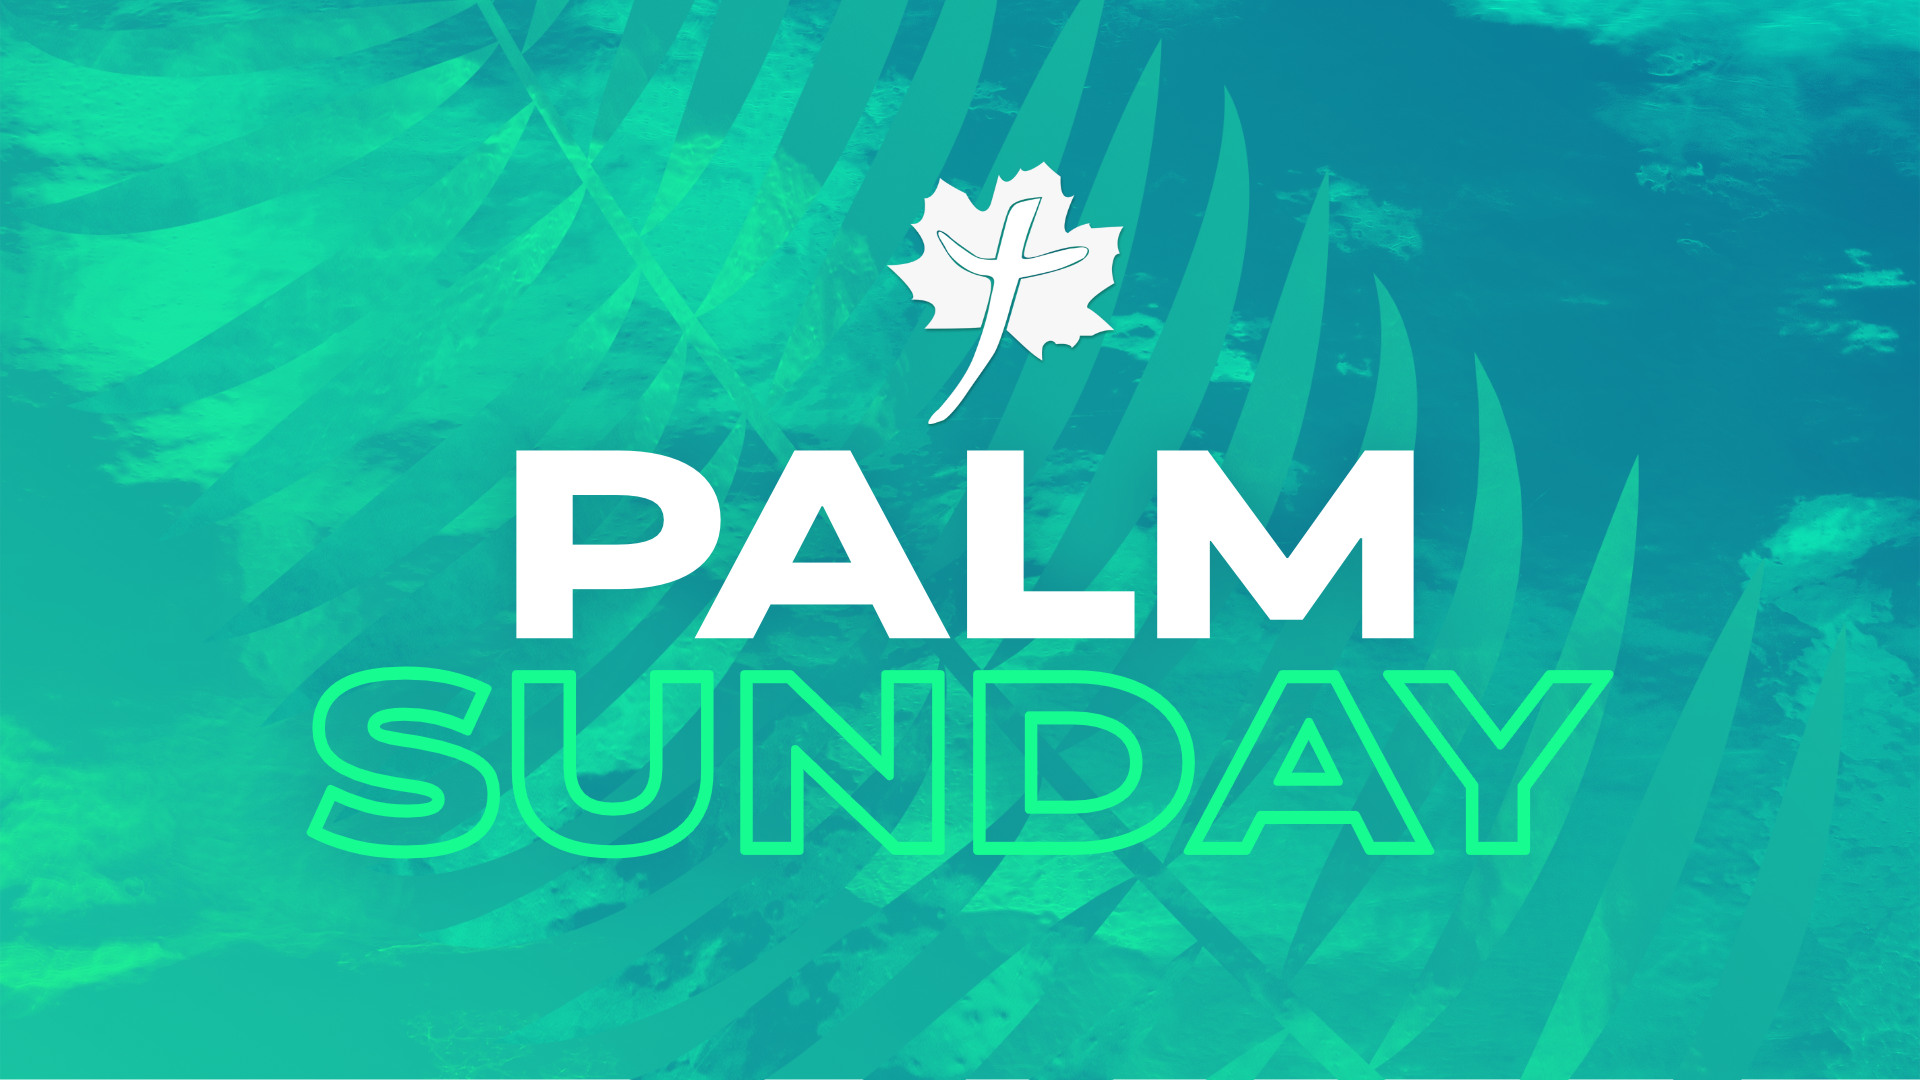 Palm Sunday • April 14, 2019